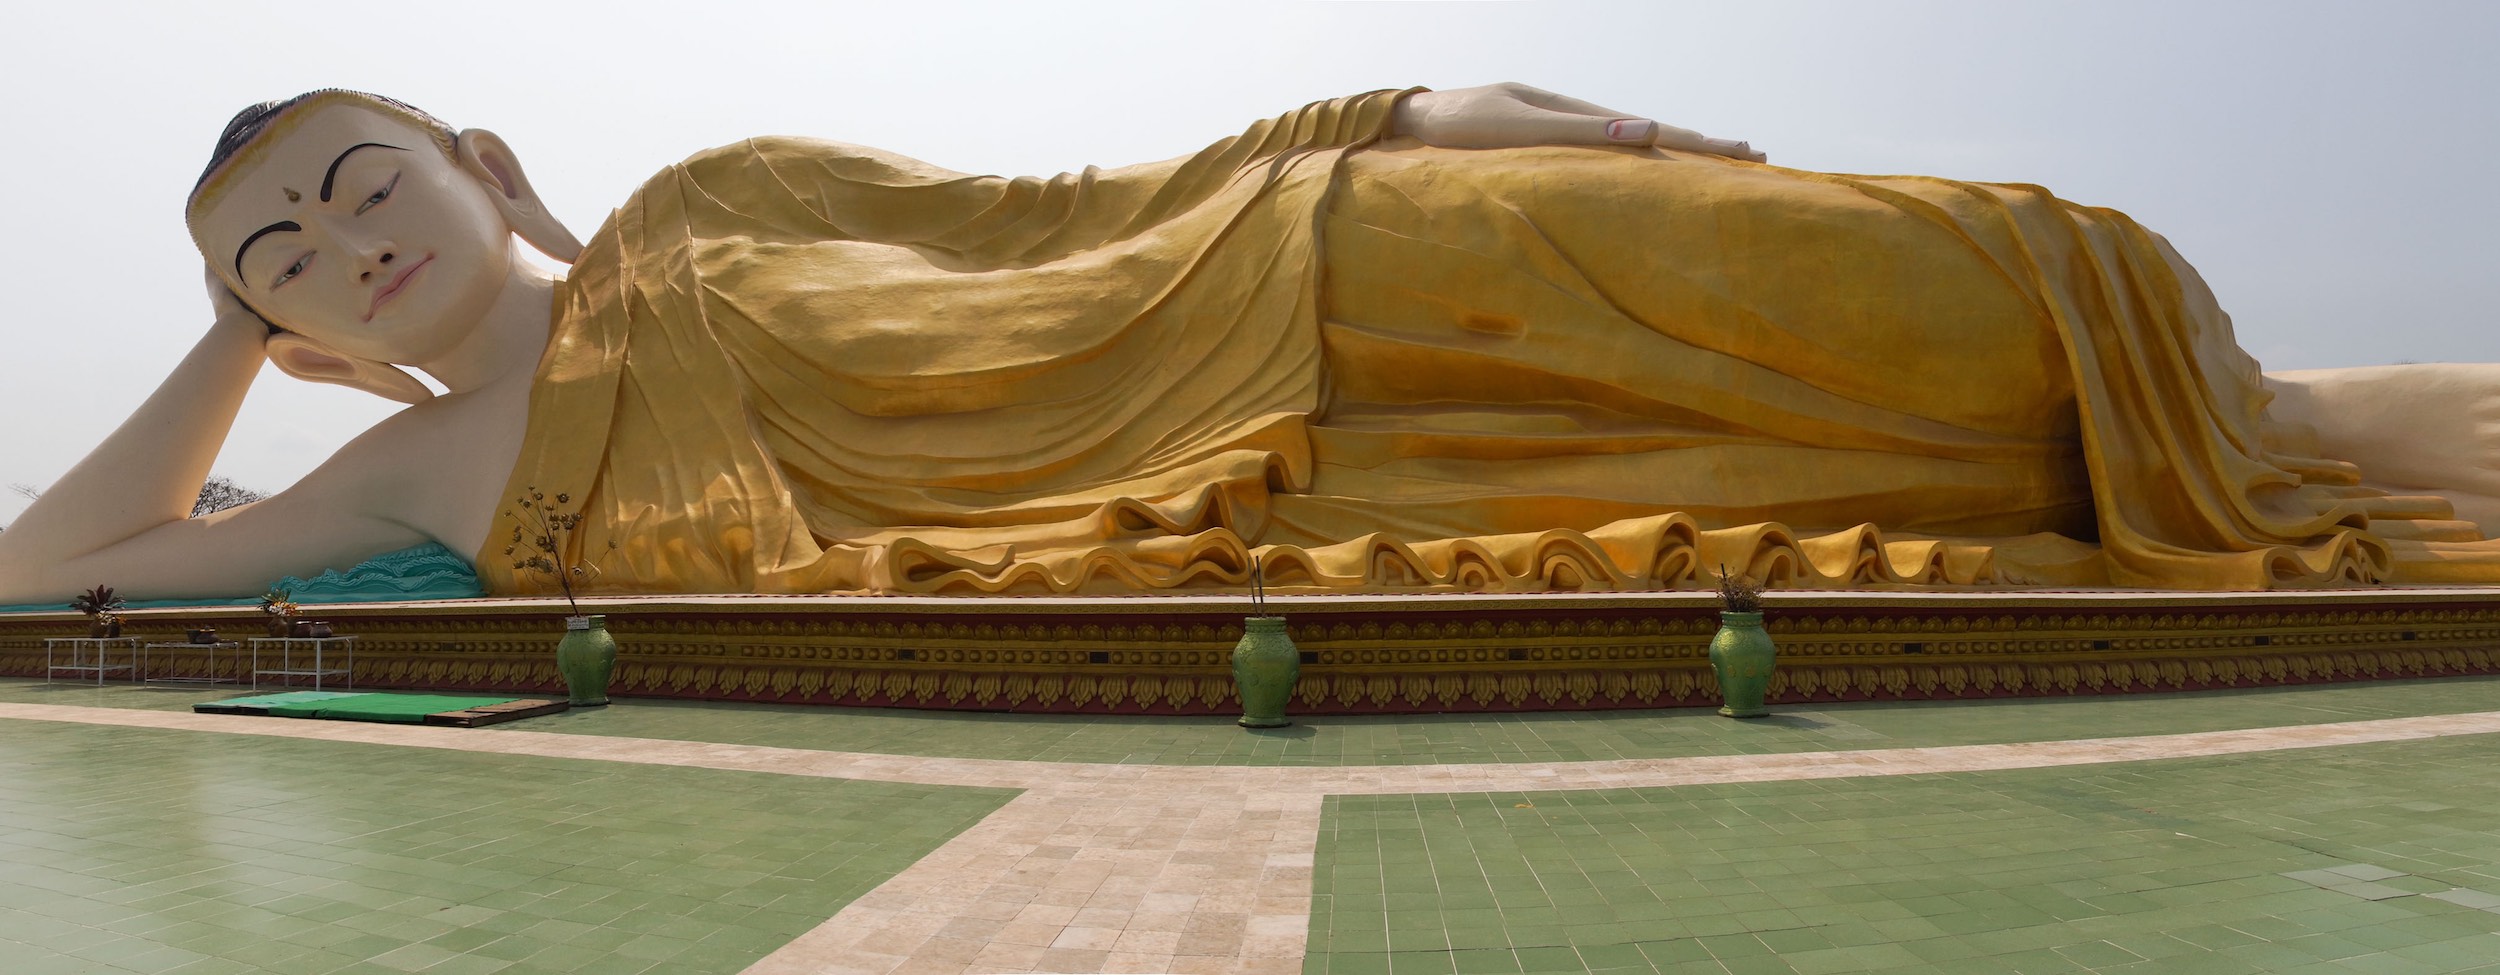 mya-tha-lyaung-reclining-buddha-bago-myanmar.jpg